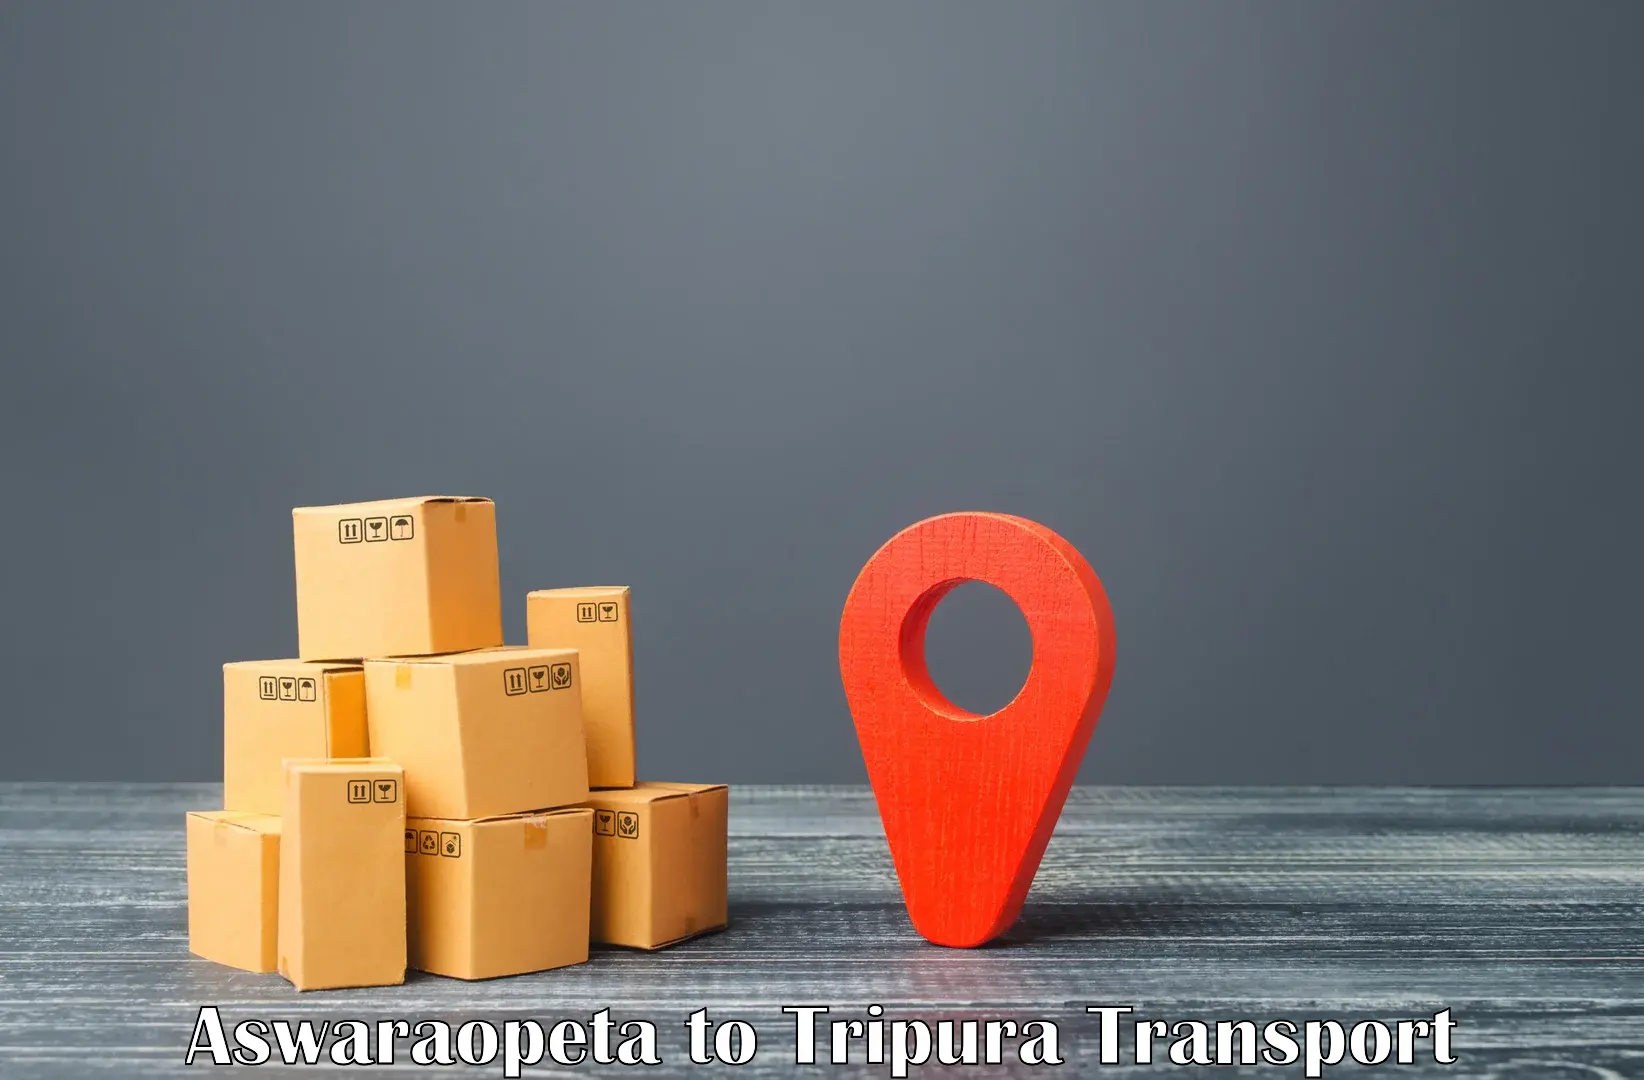 Online transport service Aswaraopeta to Radhakishorepur